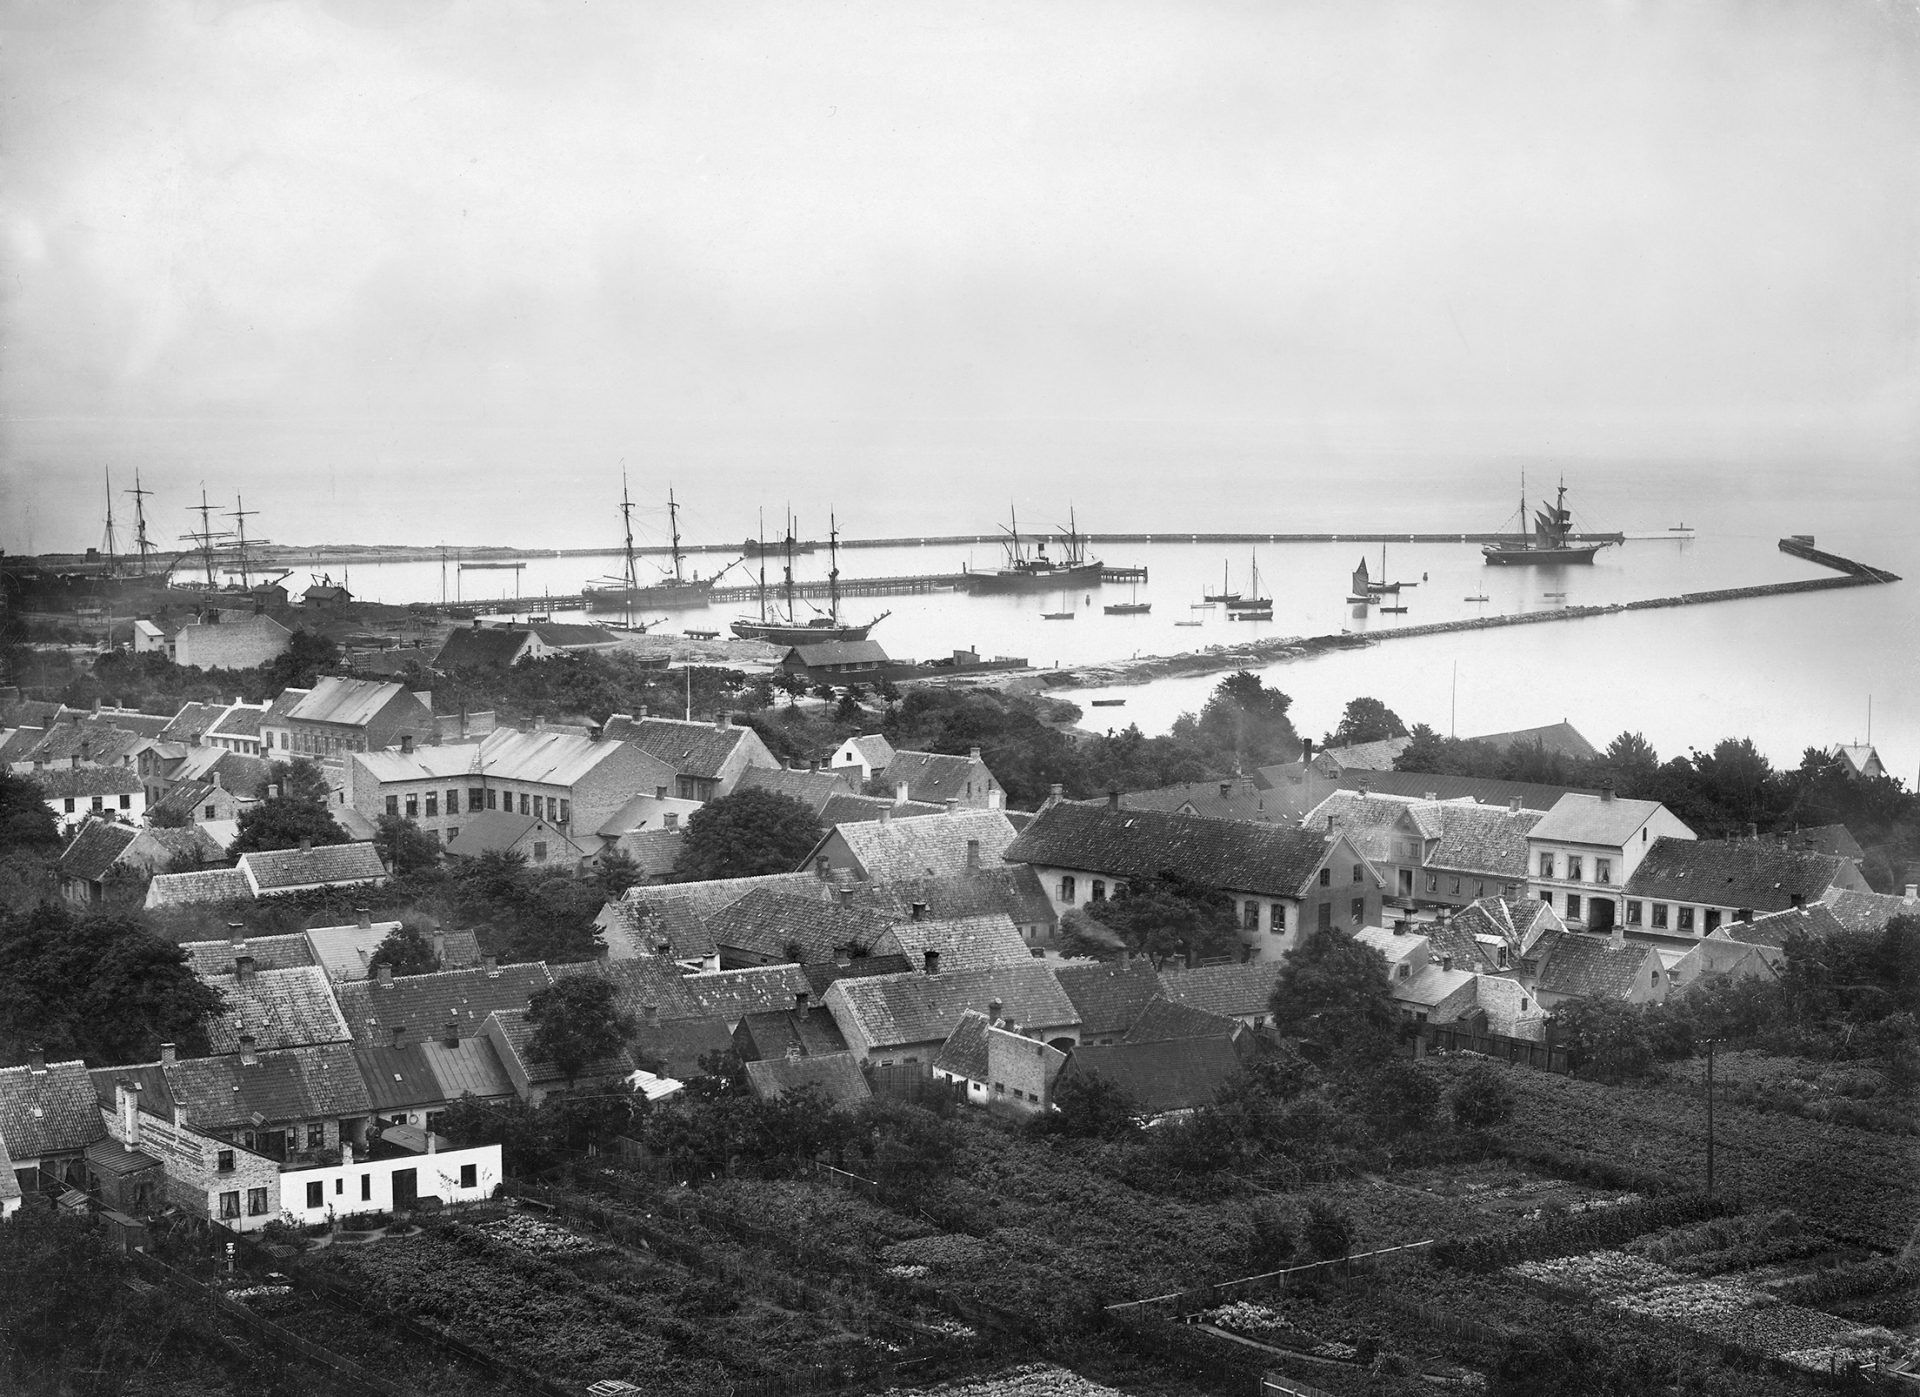 Ett gammalt fotografi som visar en mängd små hus med en hamn med segelfartyg i bakgrunden.